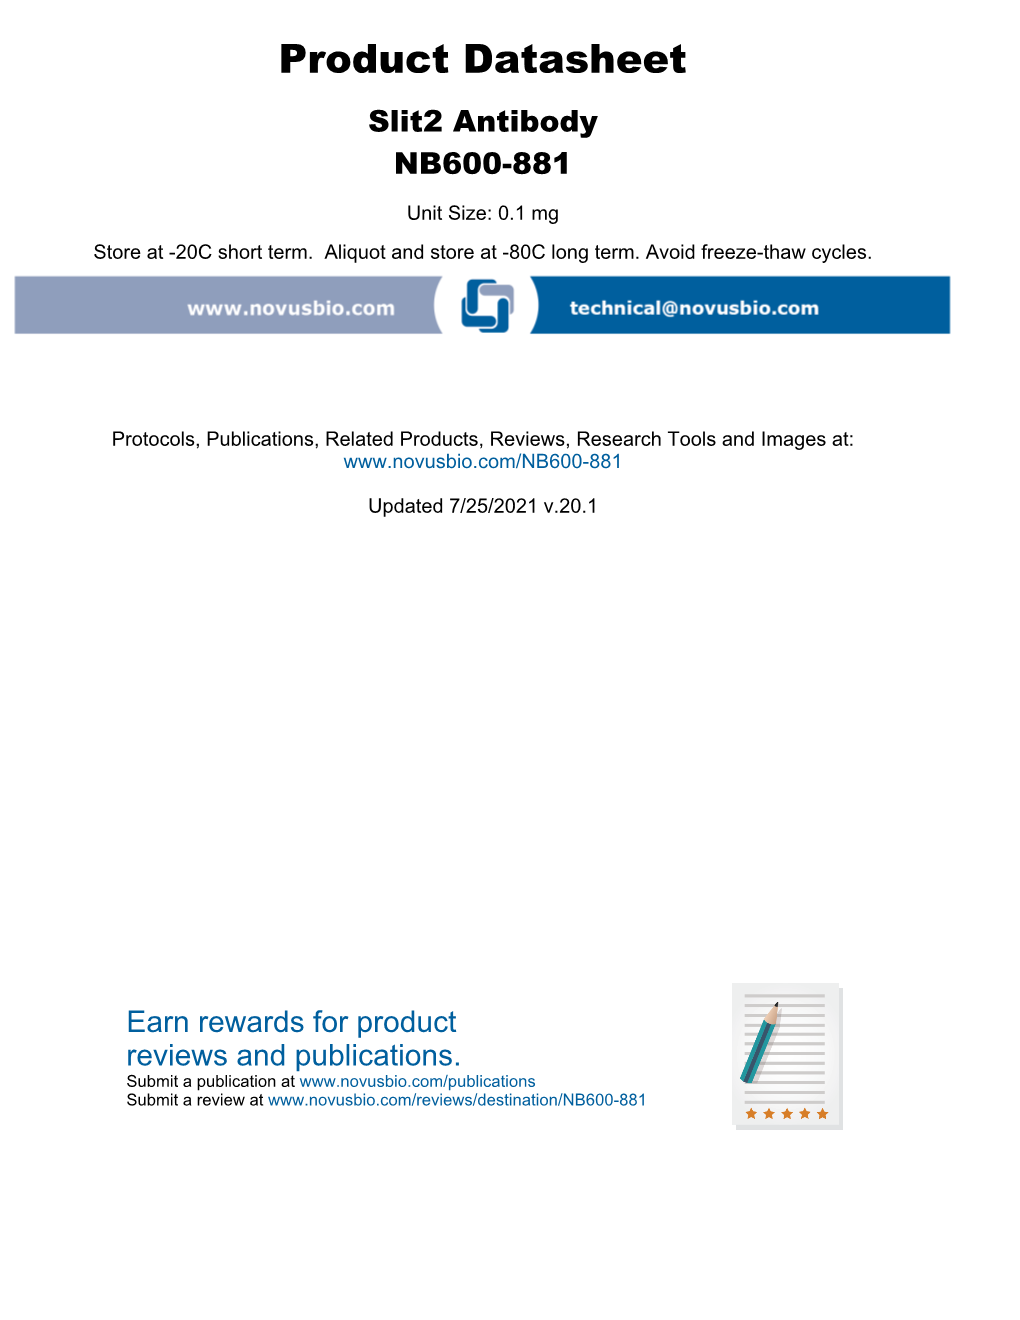 Product Datasheet Slit2 Antibody NB600-881